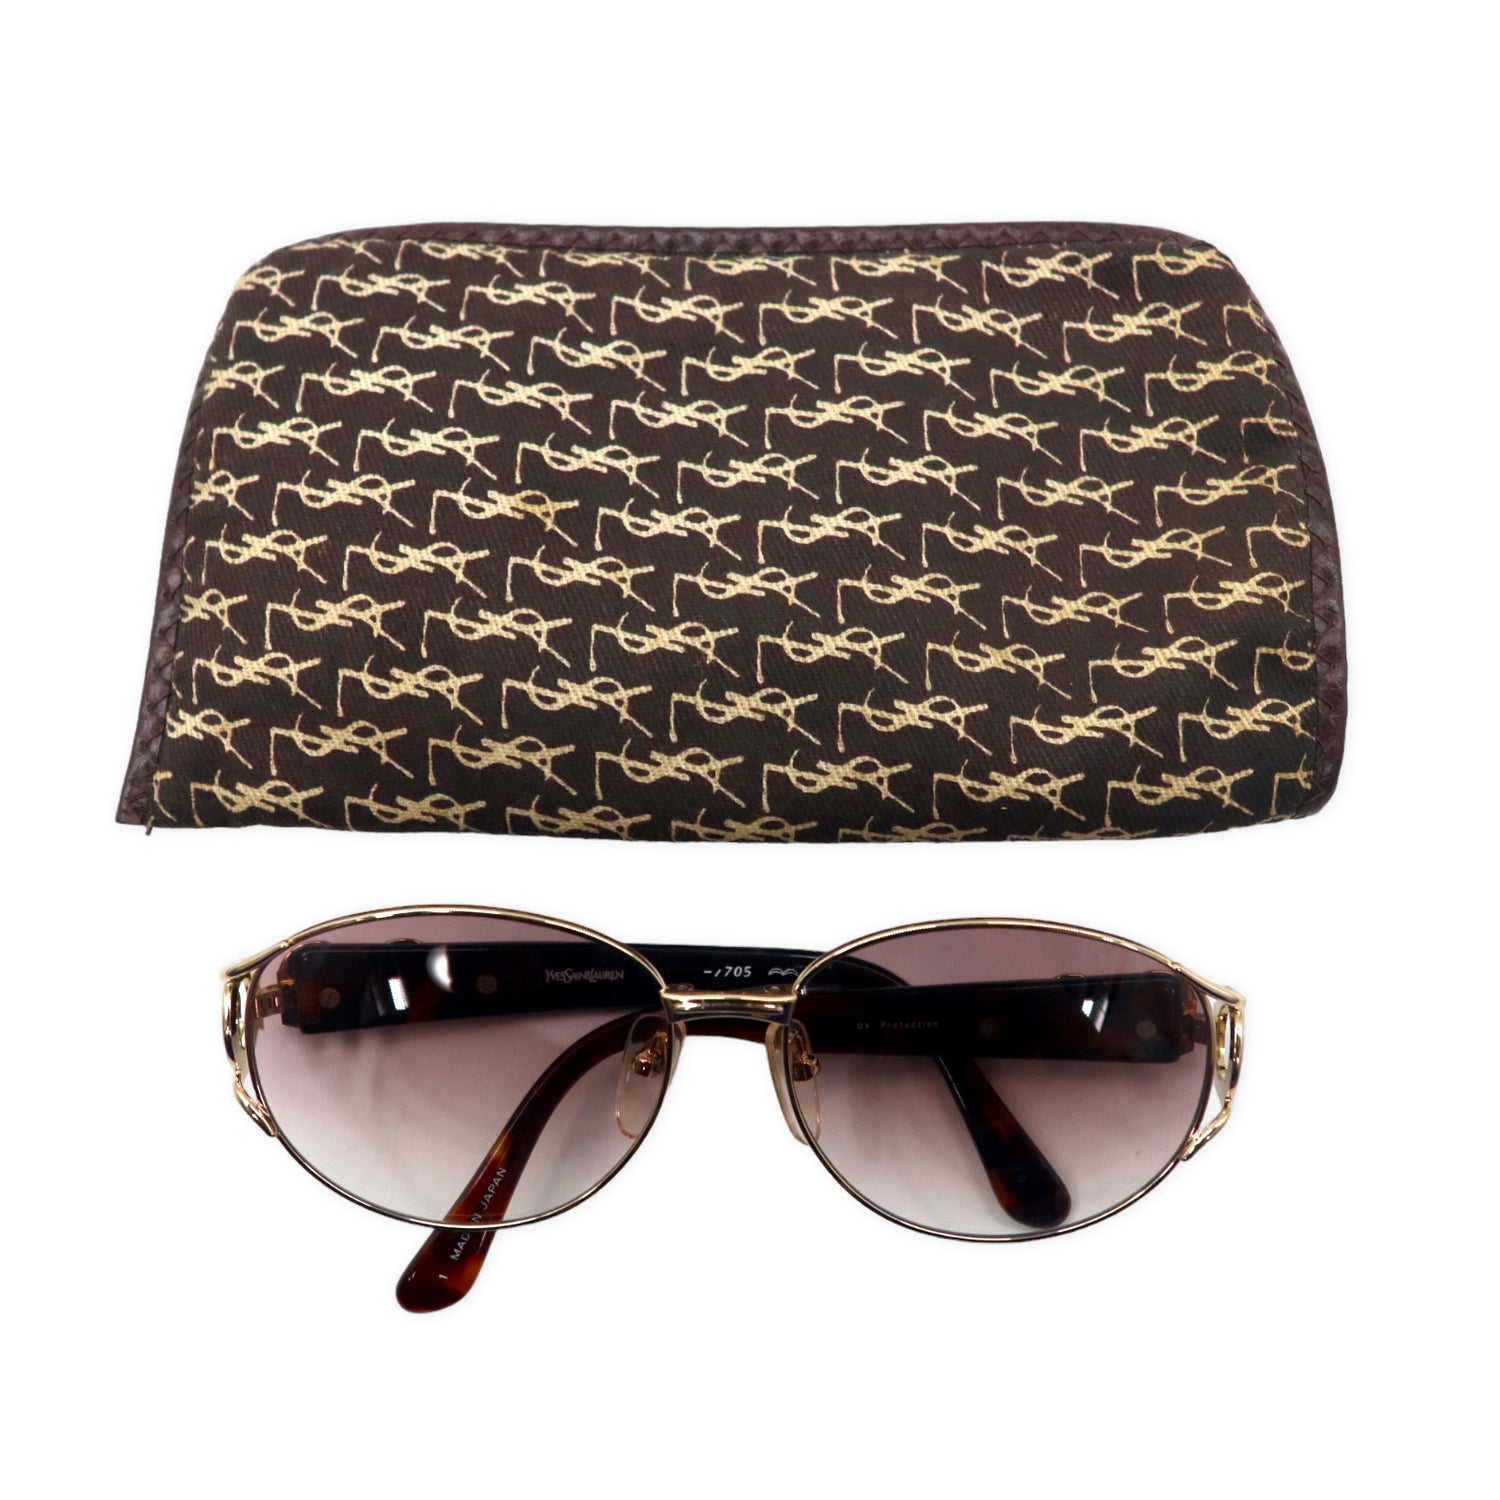 Yves Saint Laurent Sunglasses Gold Tortoiseshell Collar Lens UV ...